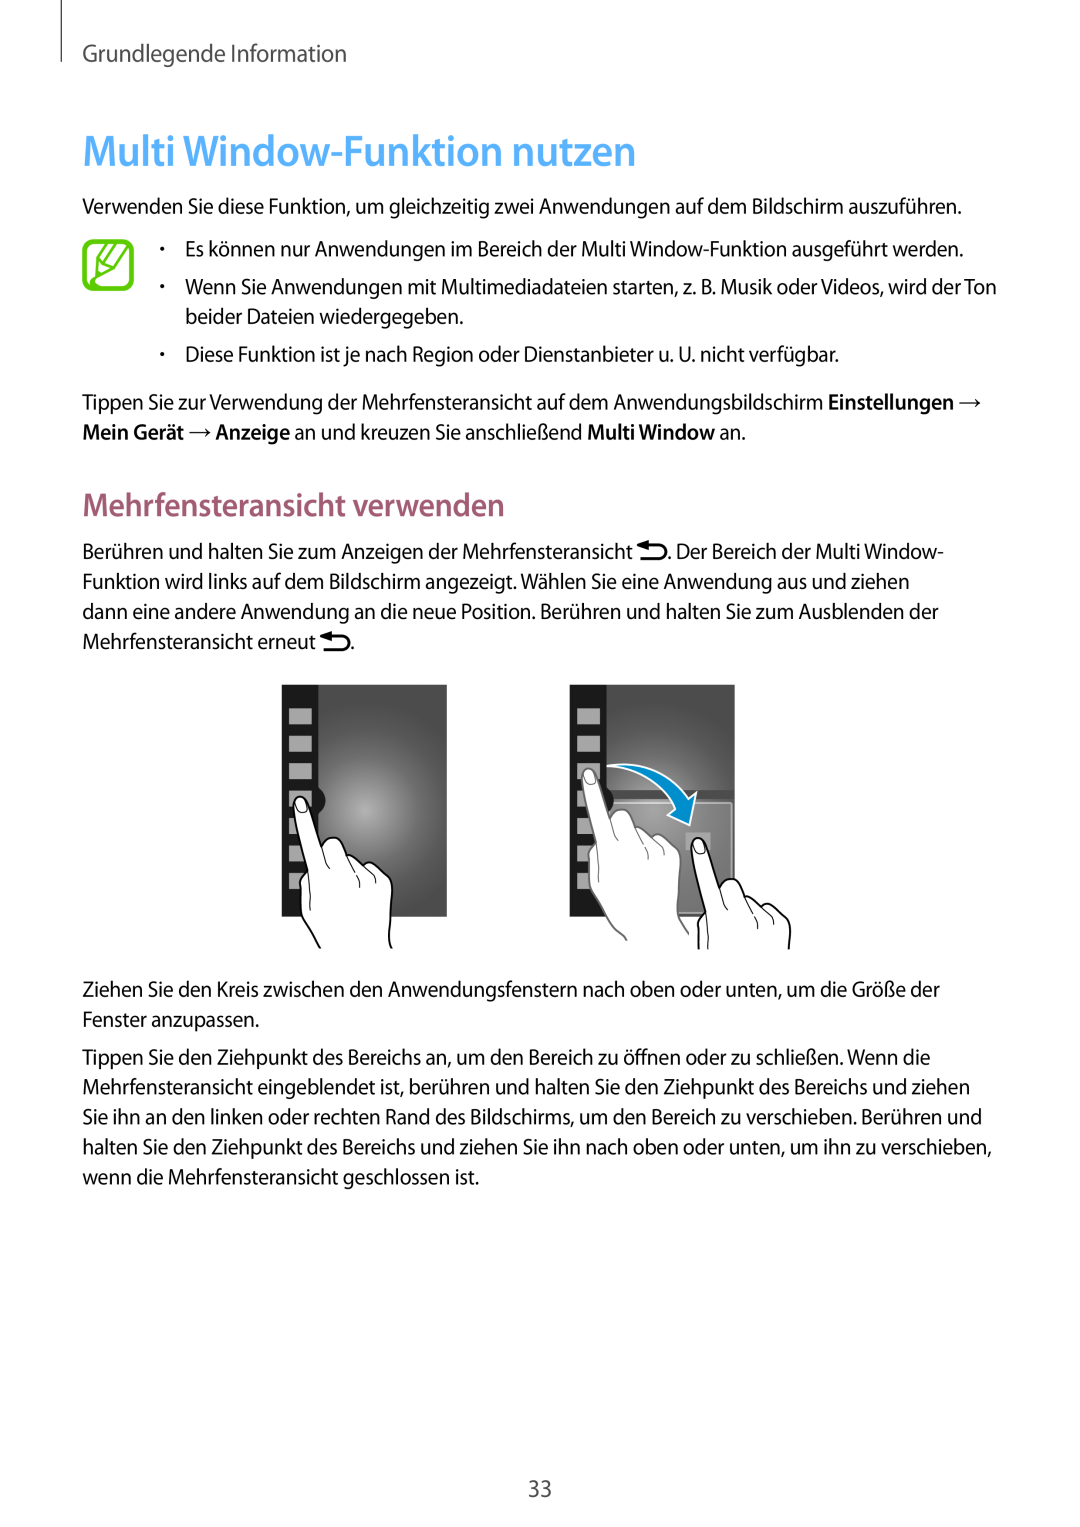 Samsung GT-I9505ZWATMN manual Multi Window-Funktion nutzen, Mehrfensteransicht verwenden, Grundlegende Information 